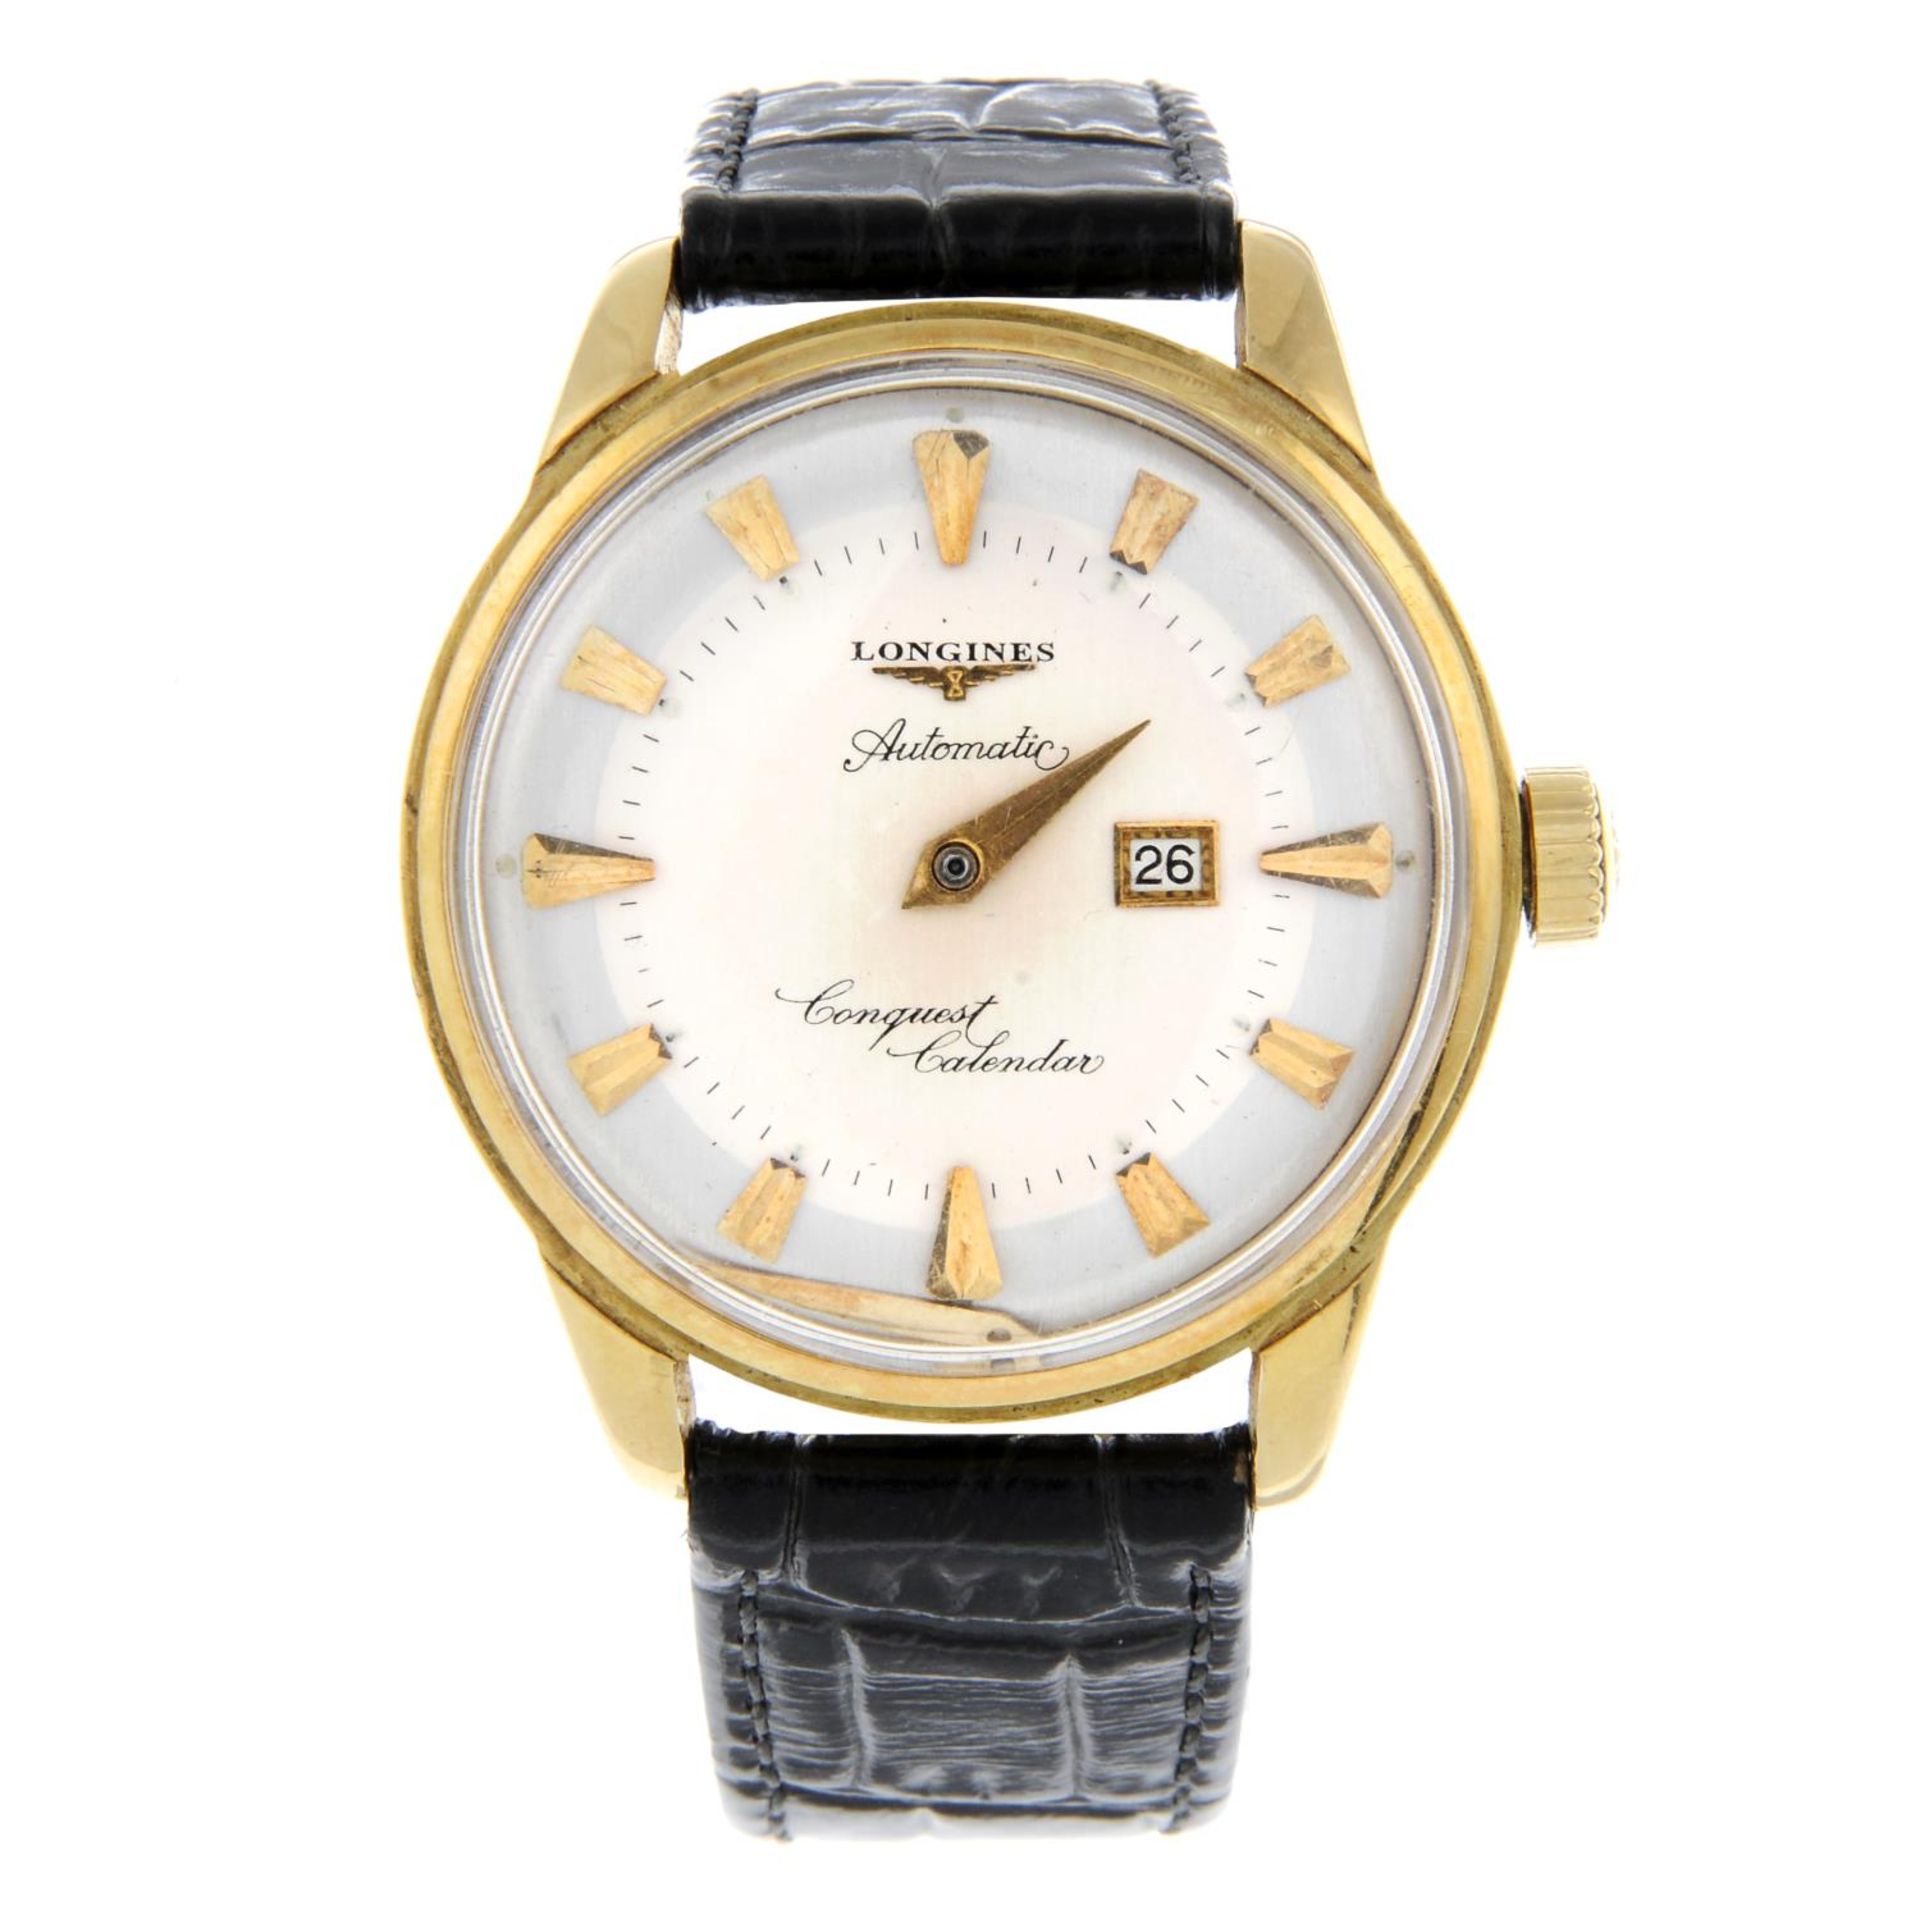 LONGINES - a gentleman's Conquest Calendar wrist watch.